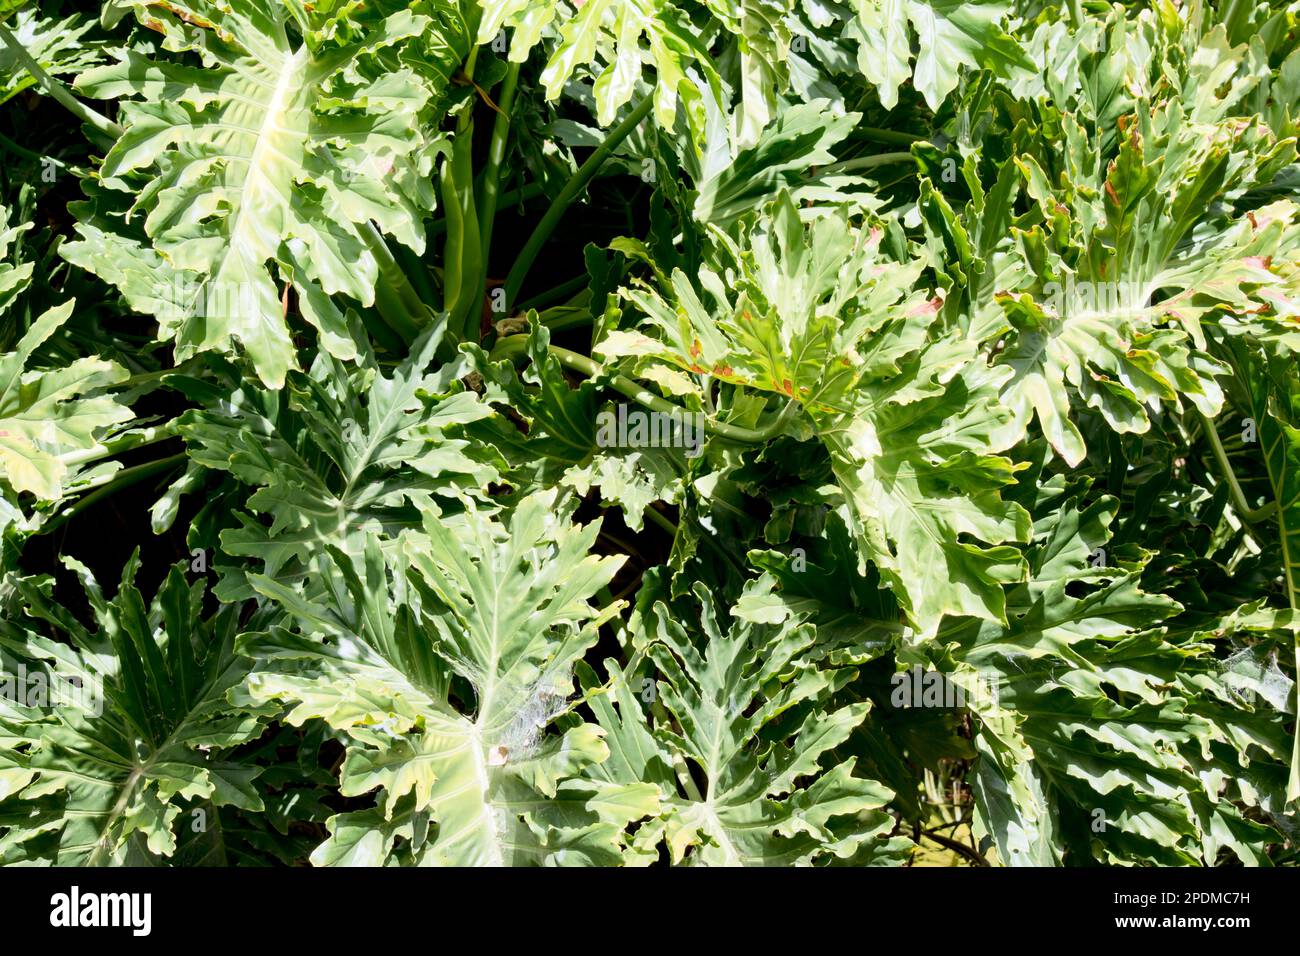 Il s'agit d'une vigne pérenne grimpante, à feuilles persistantes, qui est peut-être la plus notée pour ses grandes feuilles perforées sur des tiges de plantes épaisses et son long cordon comme aeri Banque D'Images